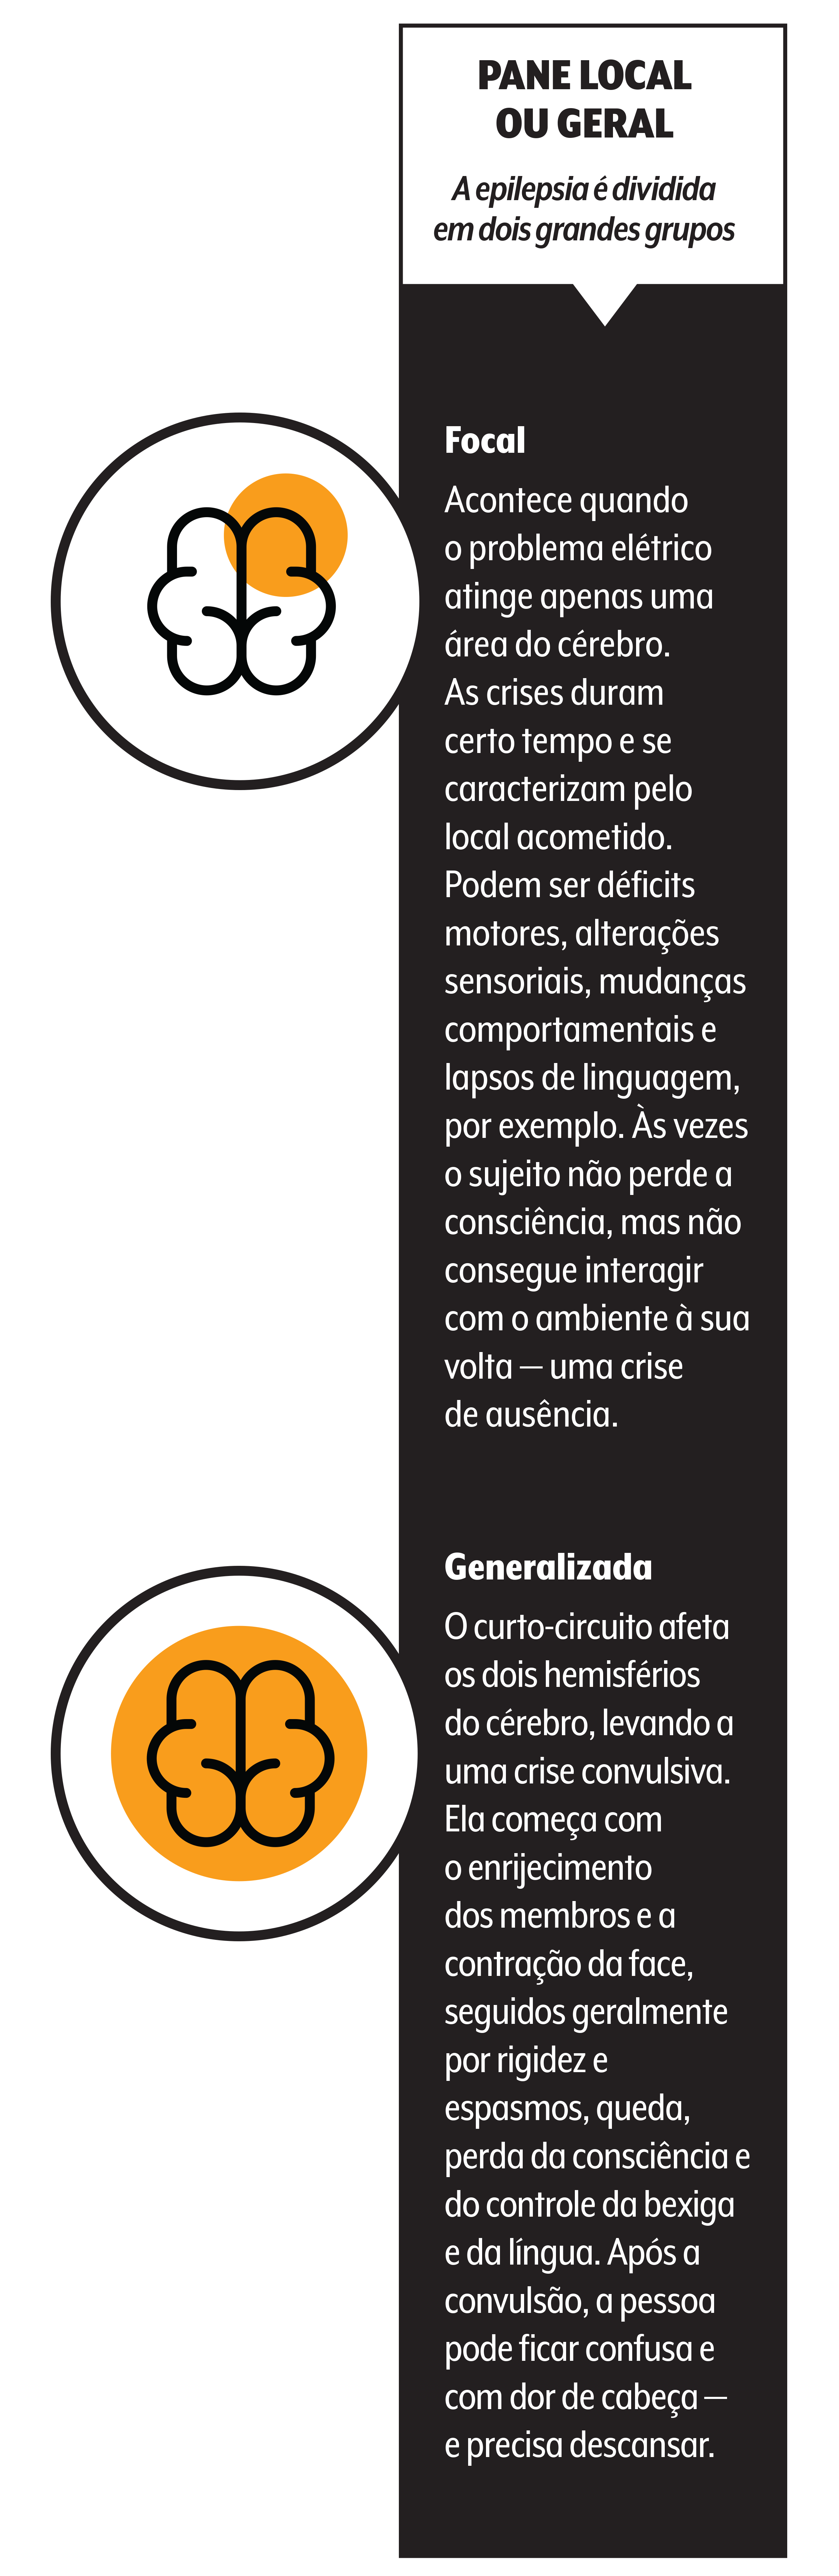 Revista Circuito - Edição 277 - Junho de 2023 by Revista Circuito